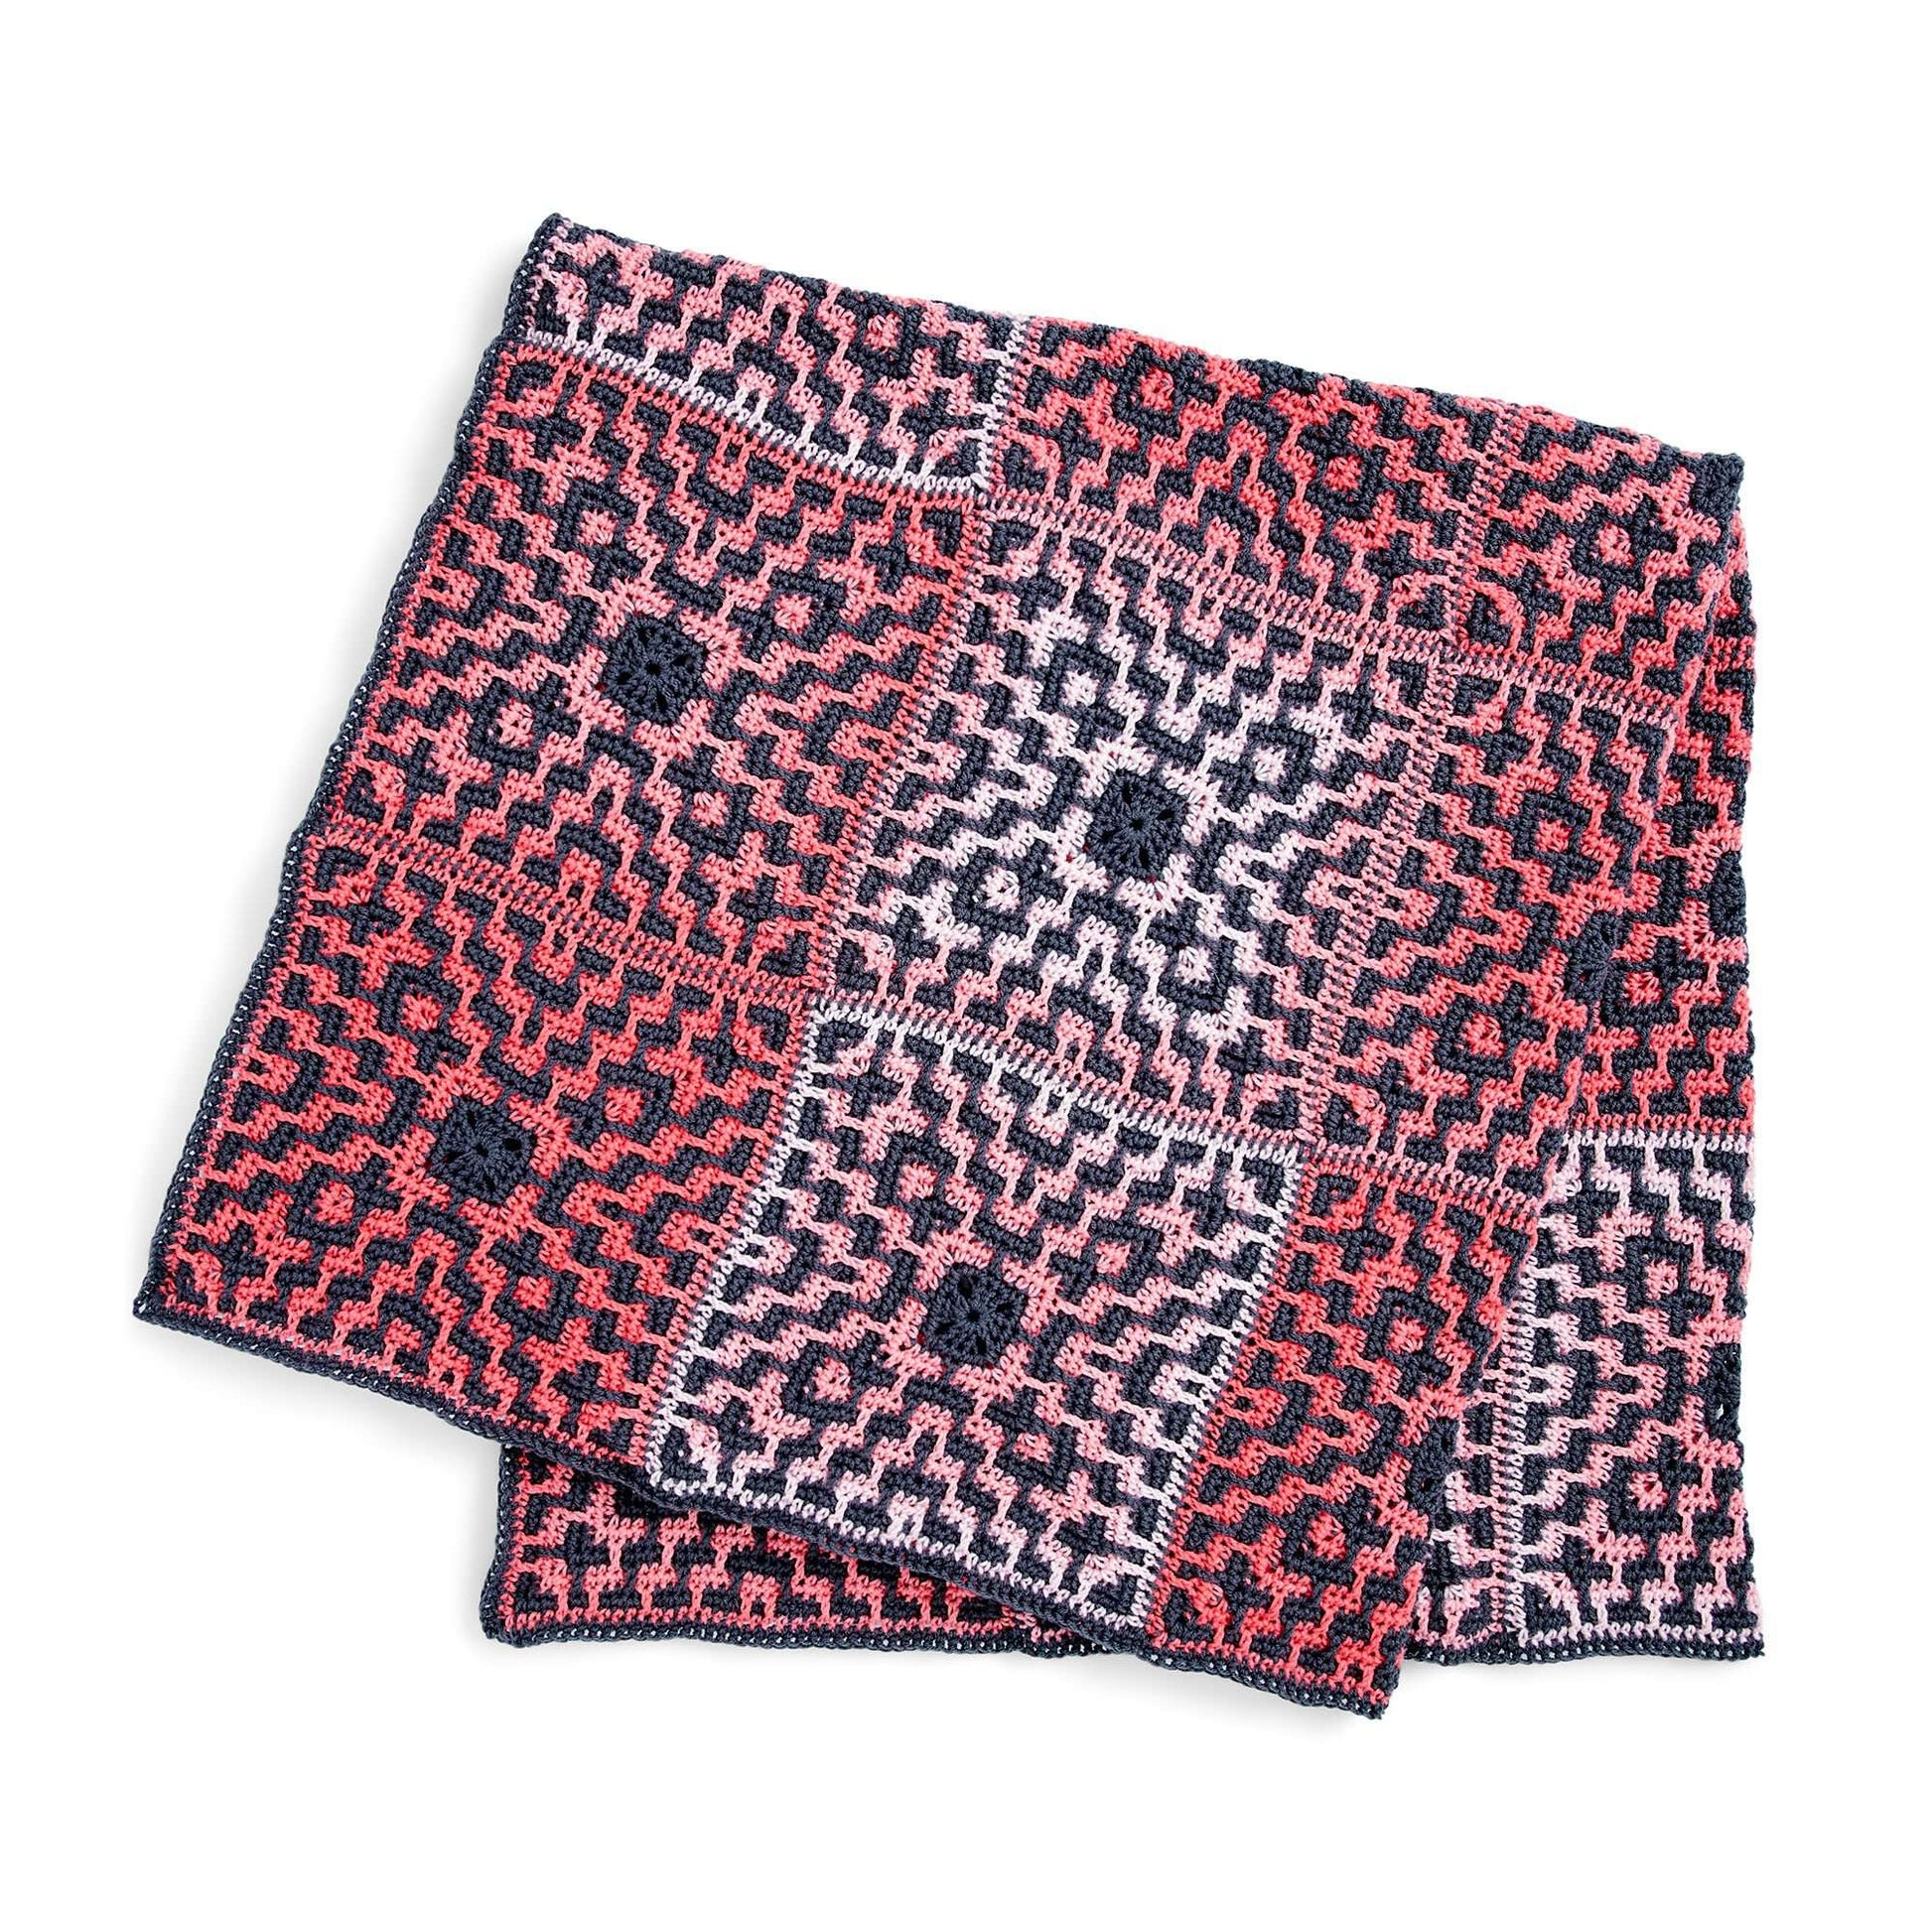 Free Red Heart Mosaic Motifs Crochet Blanket Pattern